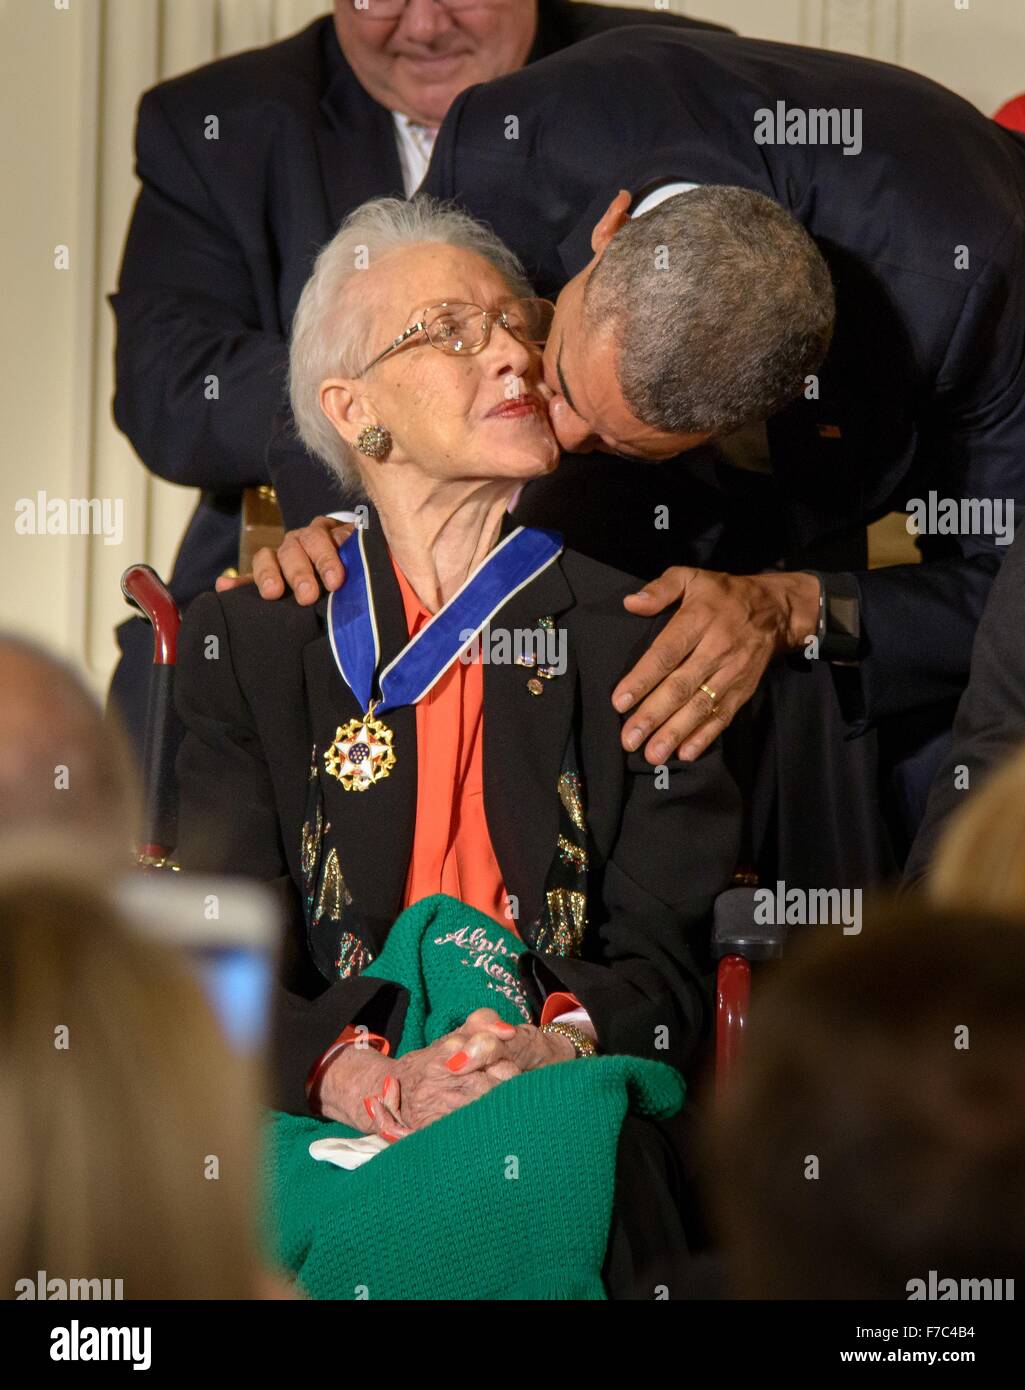 El presidente estadounidense Barack Obama besos NASA matemático Katherine Johnson en la mejilla después otorgándole la Medalla Presidencial de la libertad durante una ceremonia en el Salón Este de la Casa Blanca el 24 de noviembre de 2015 en Washington, DC. Foto de stock